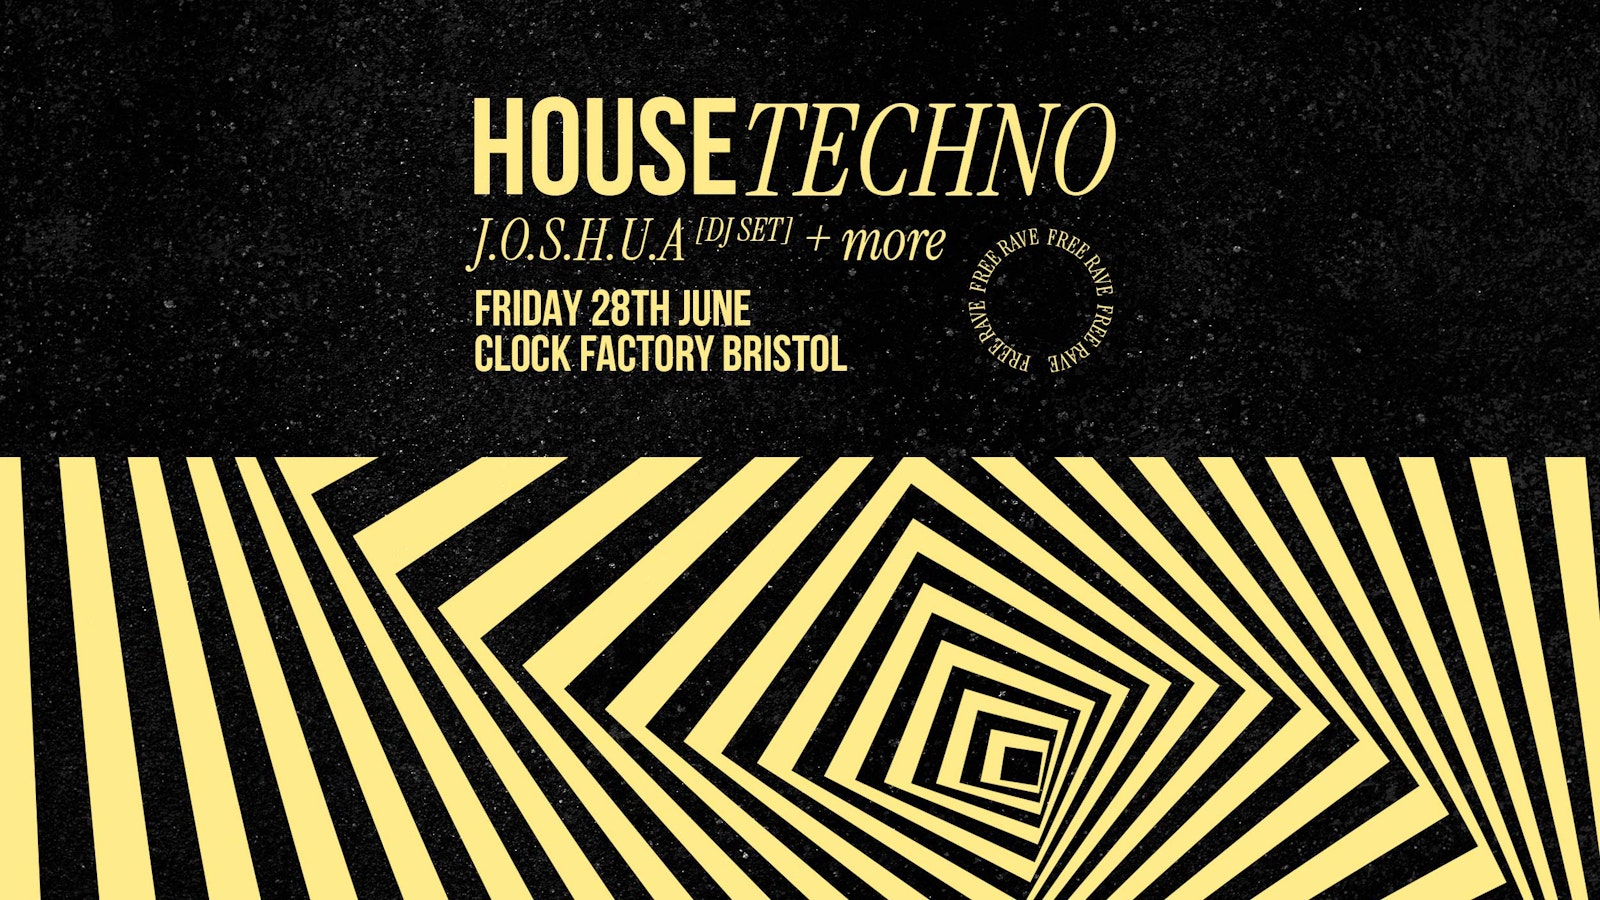 House & Techno FREE RAVE! J.O.S.H.U.A [DJ Set] + Support